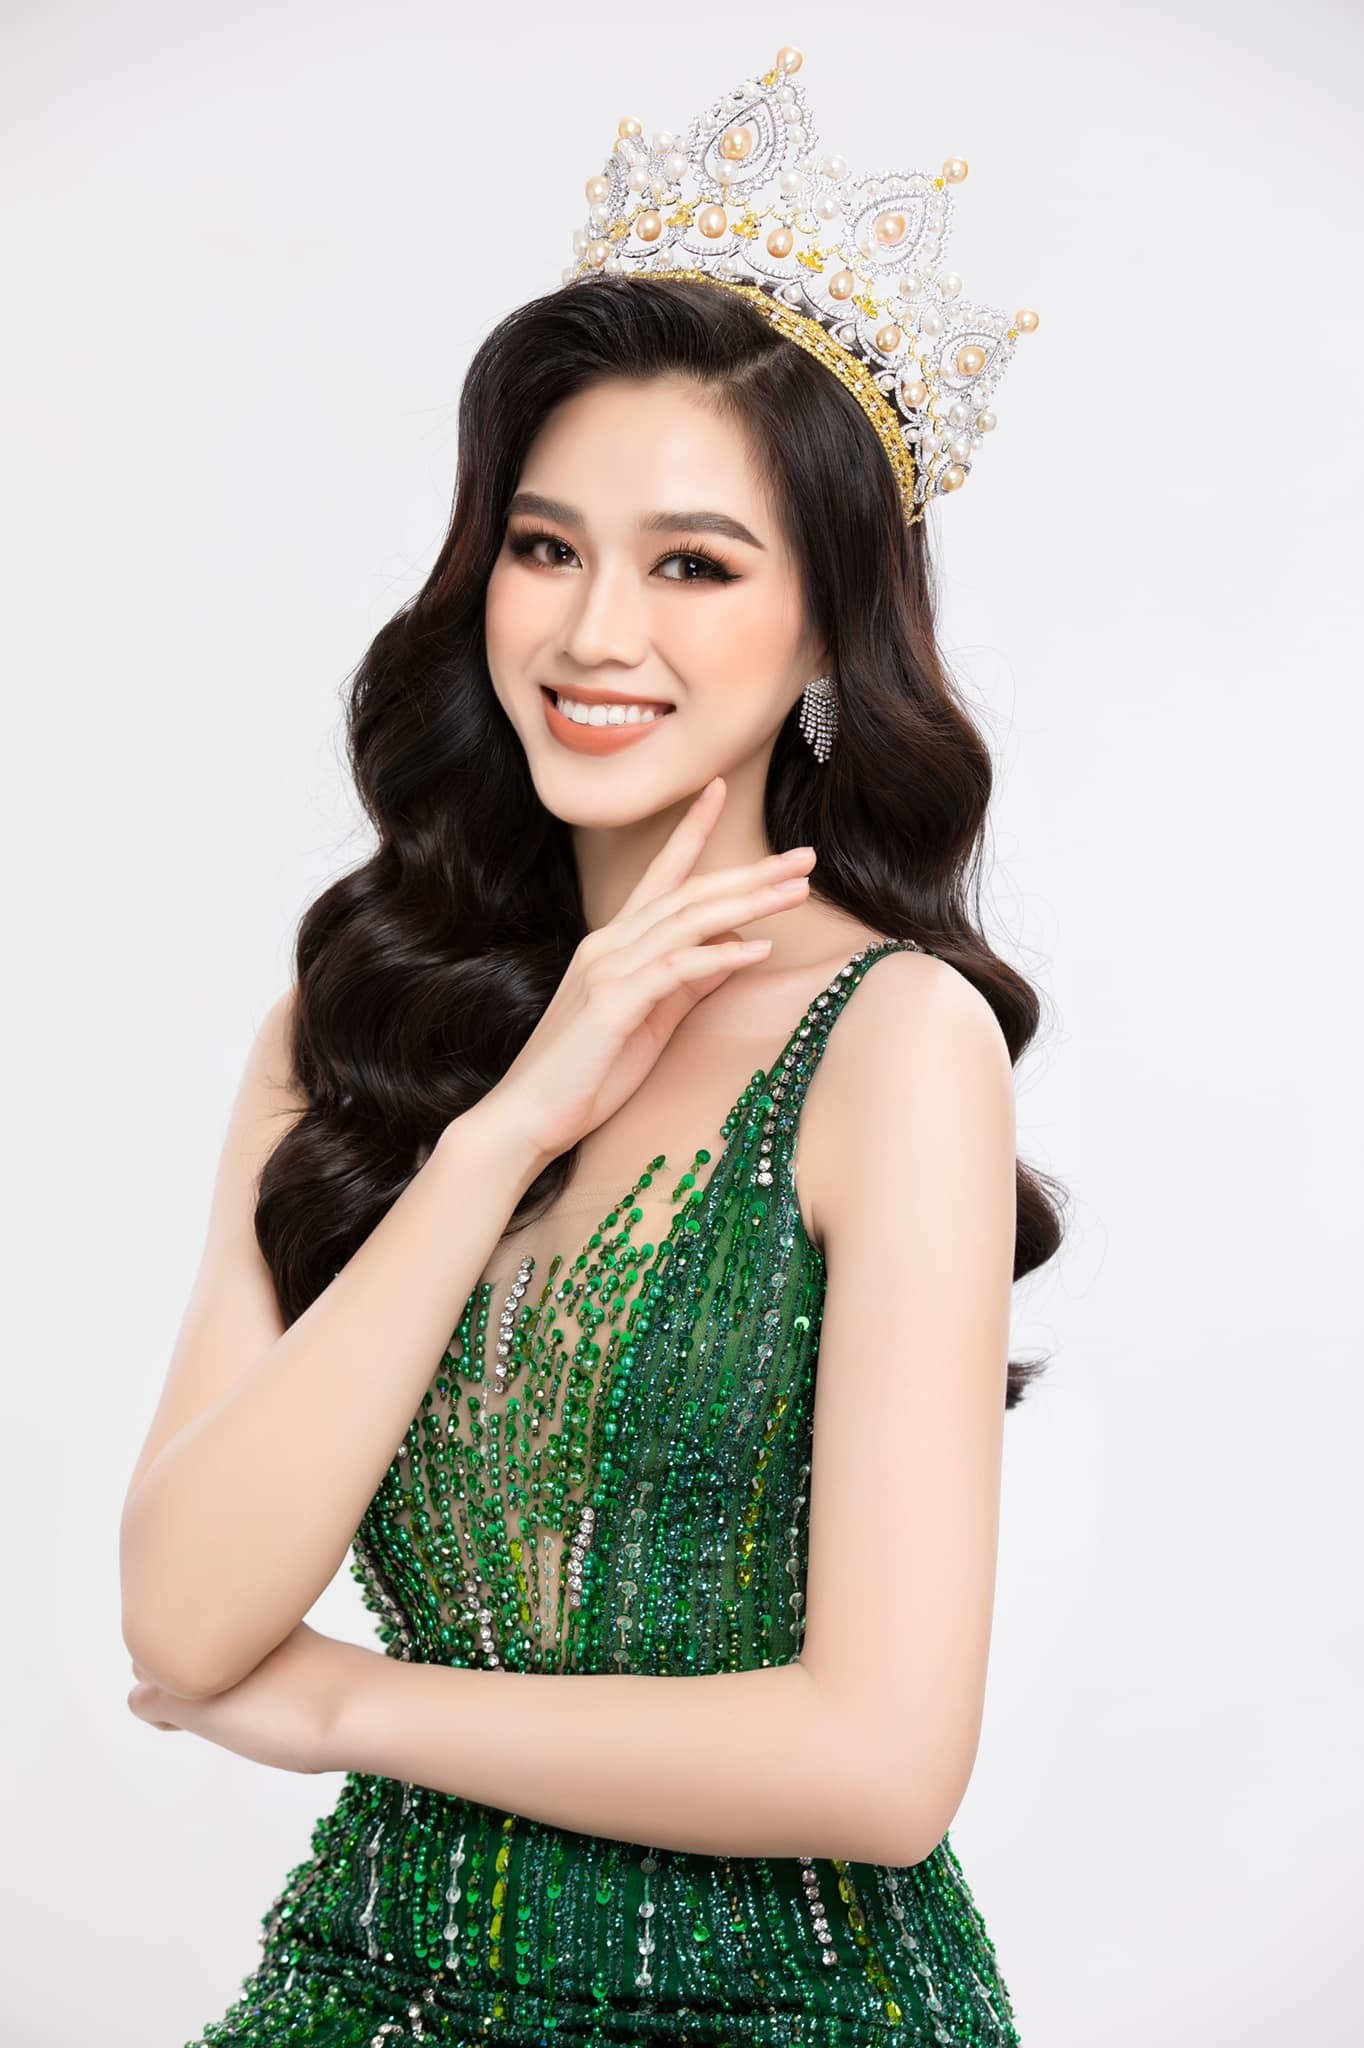 Chinh phục Miss World 2021, Hoa hậu Đỗ Thị Hà tự tin 'giao tiếp tiếng Anh đạt 8/10'!